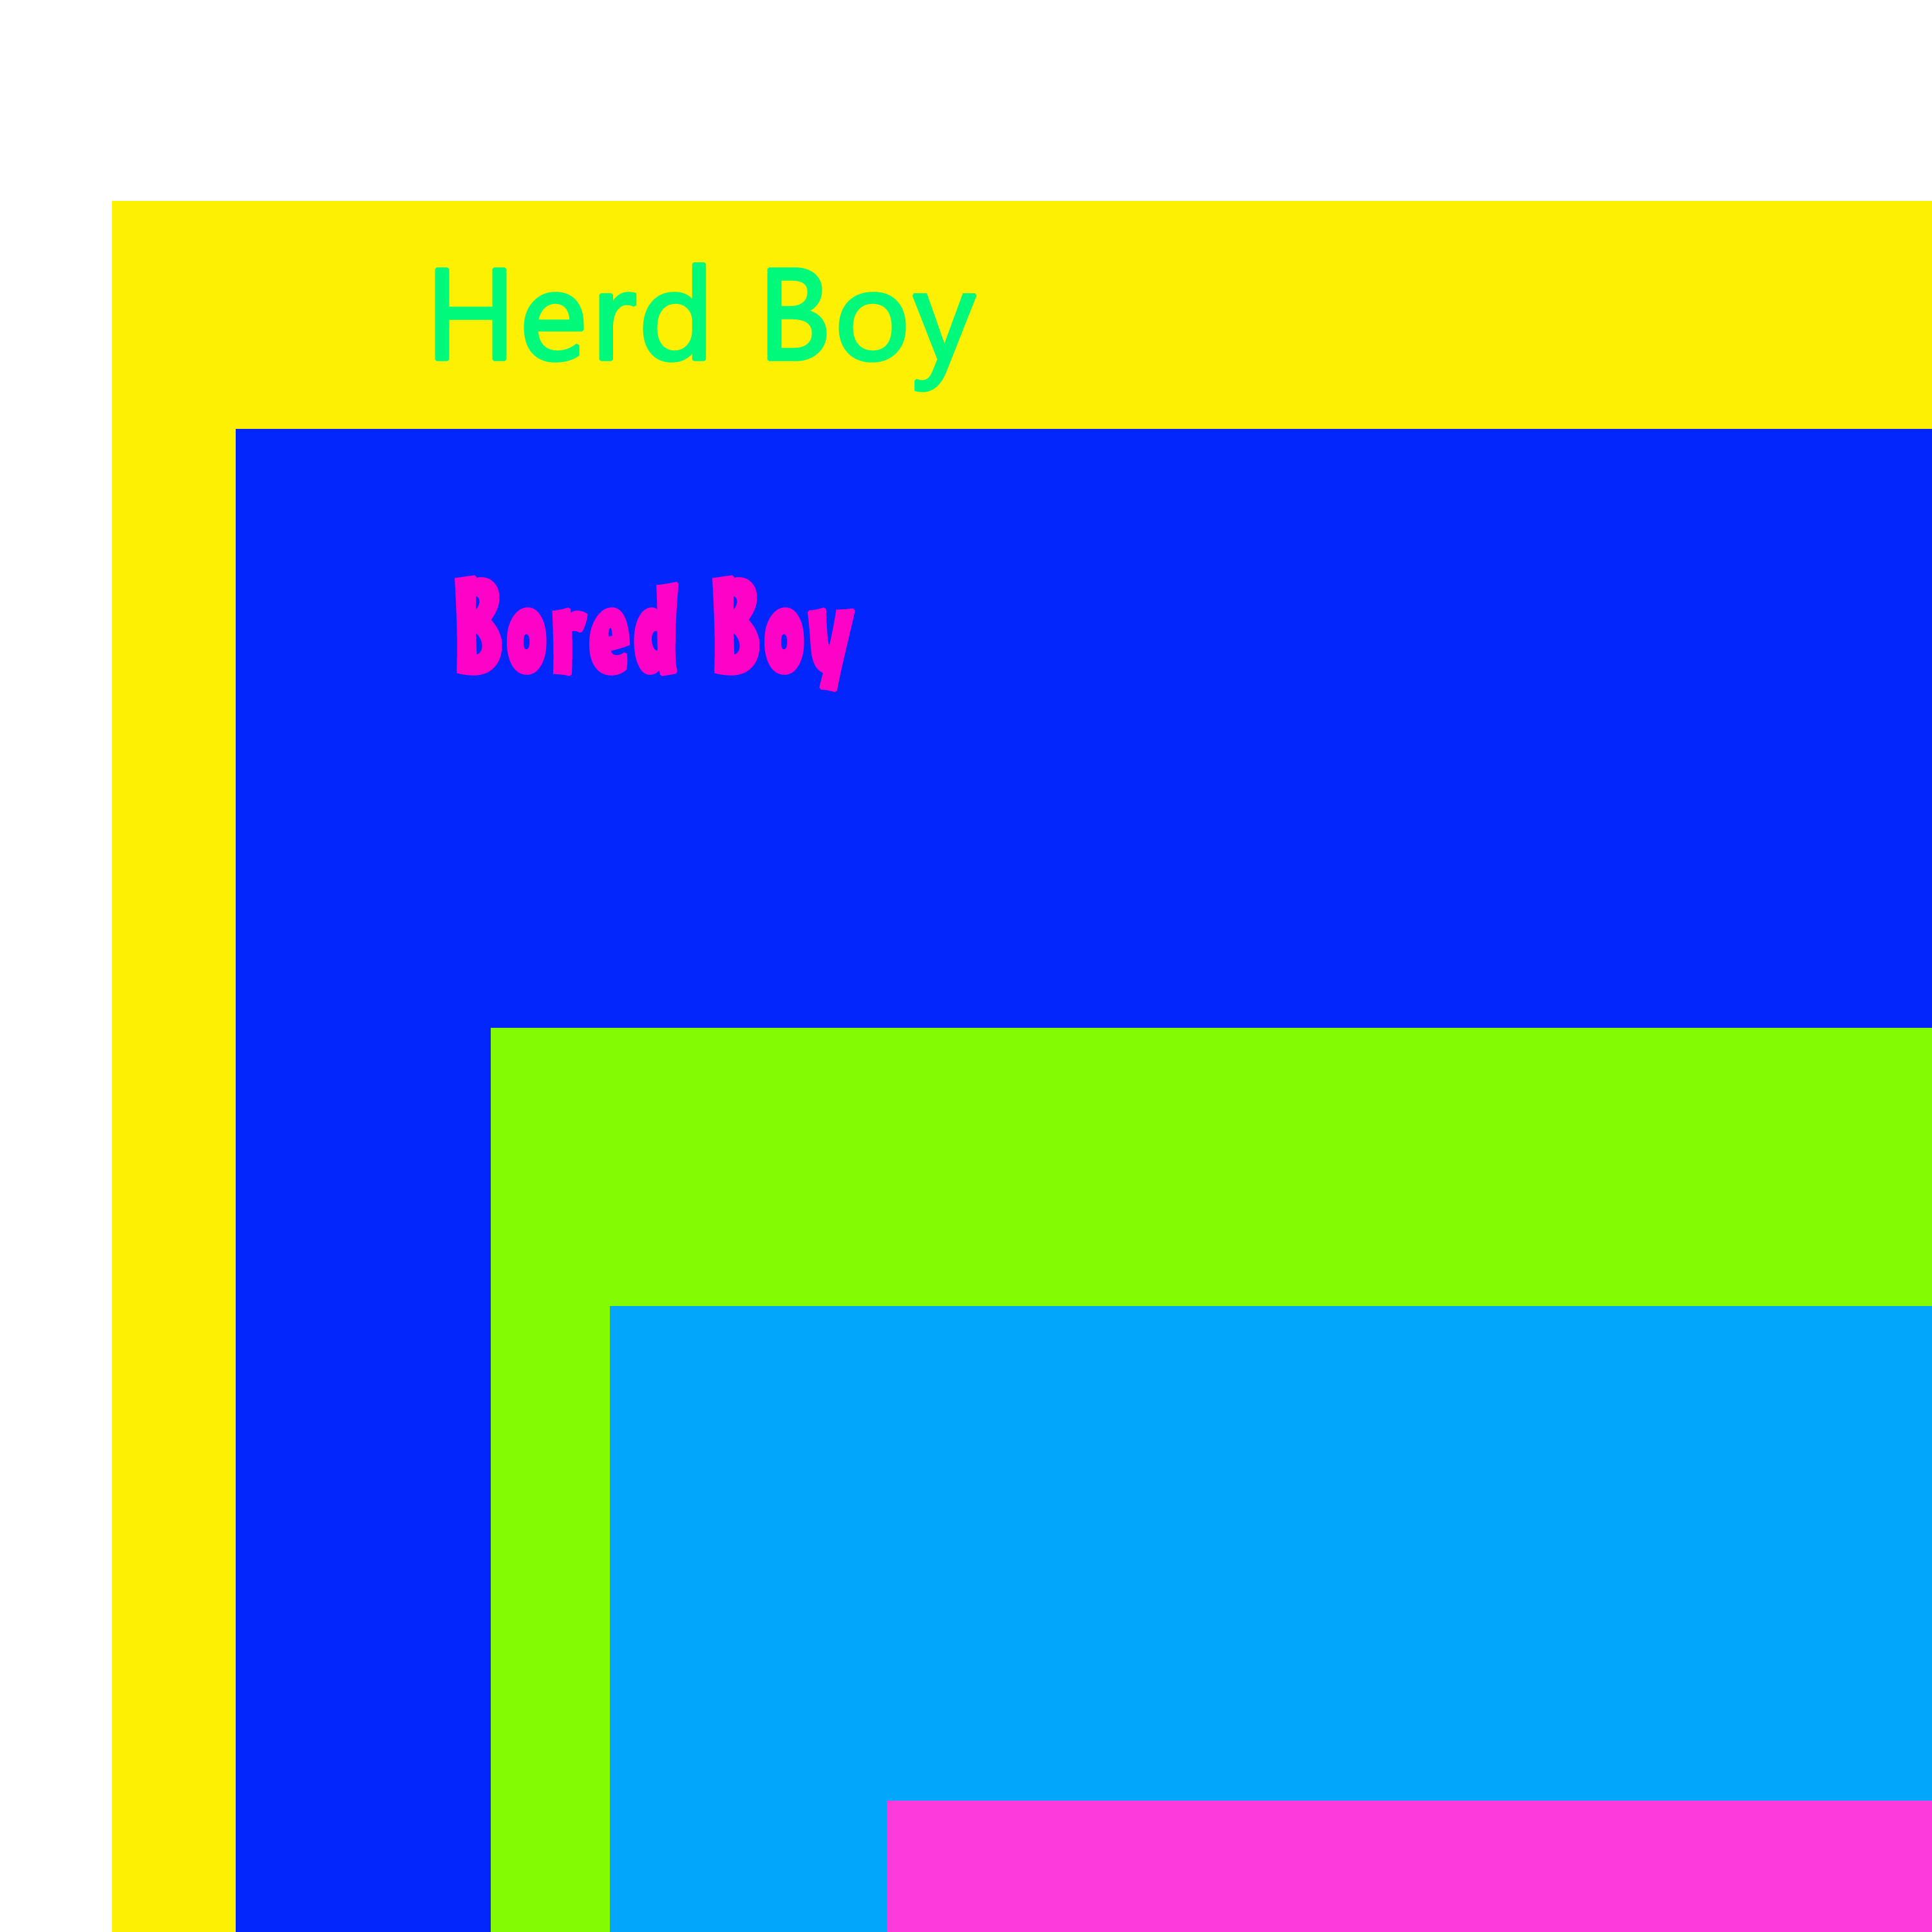 Herd Boy